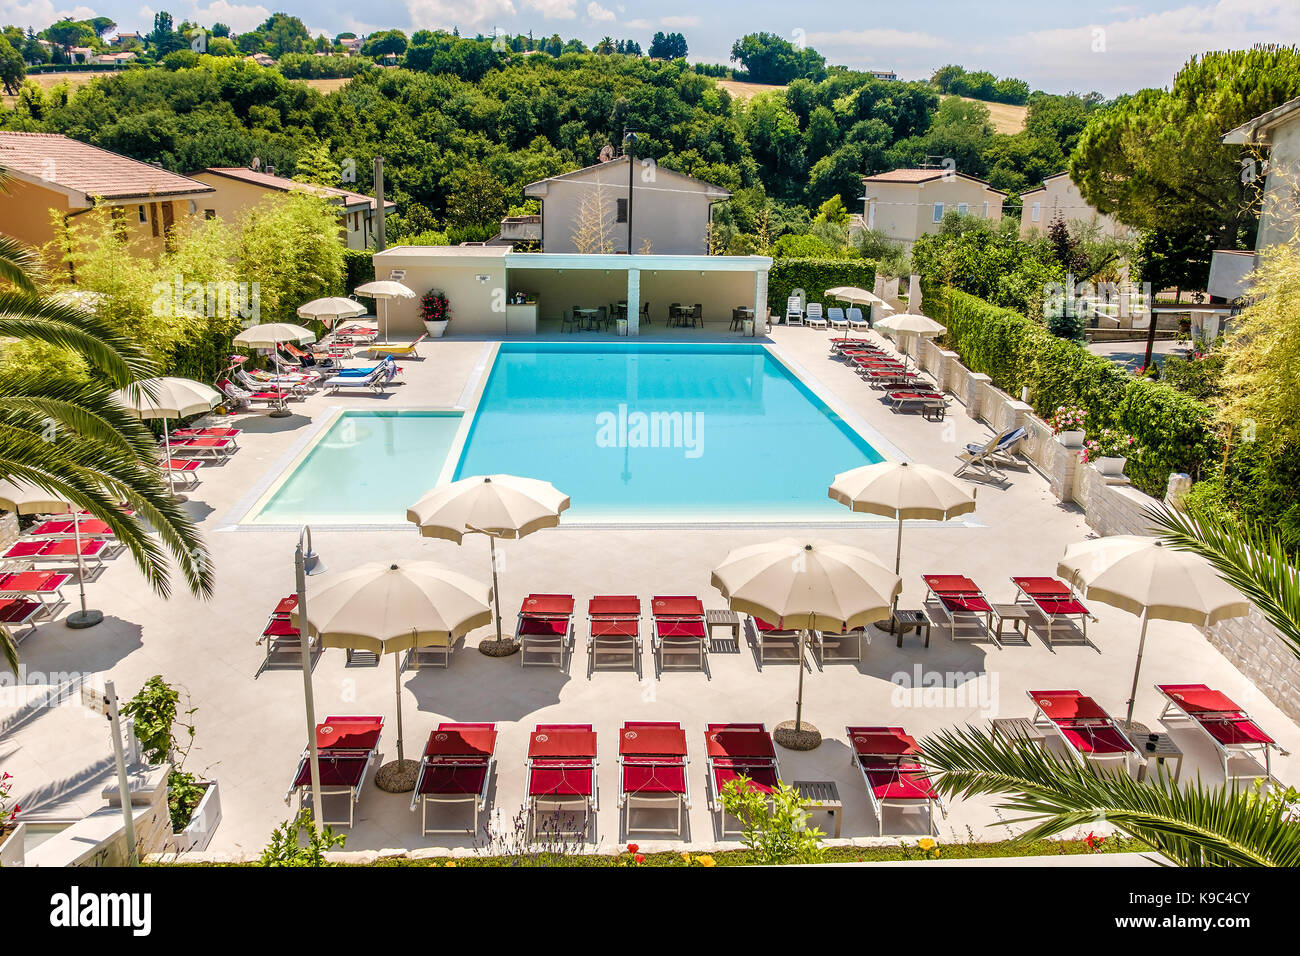 Lujoso hotel piscina vista aérea (Numana, Italia, 25 jul 2017) Foto de stock